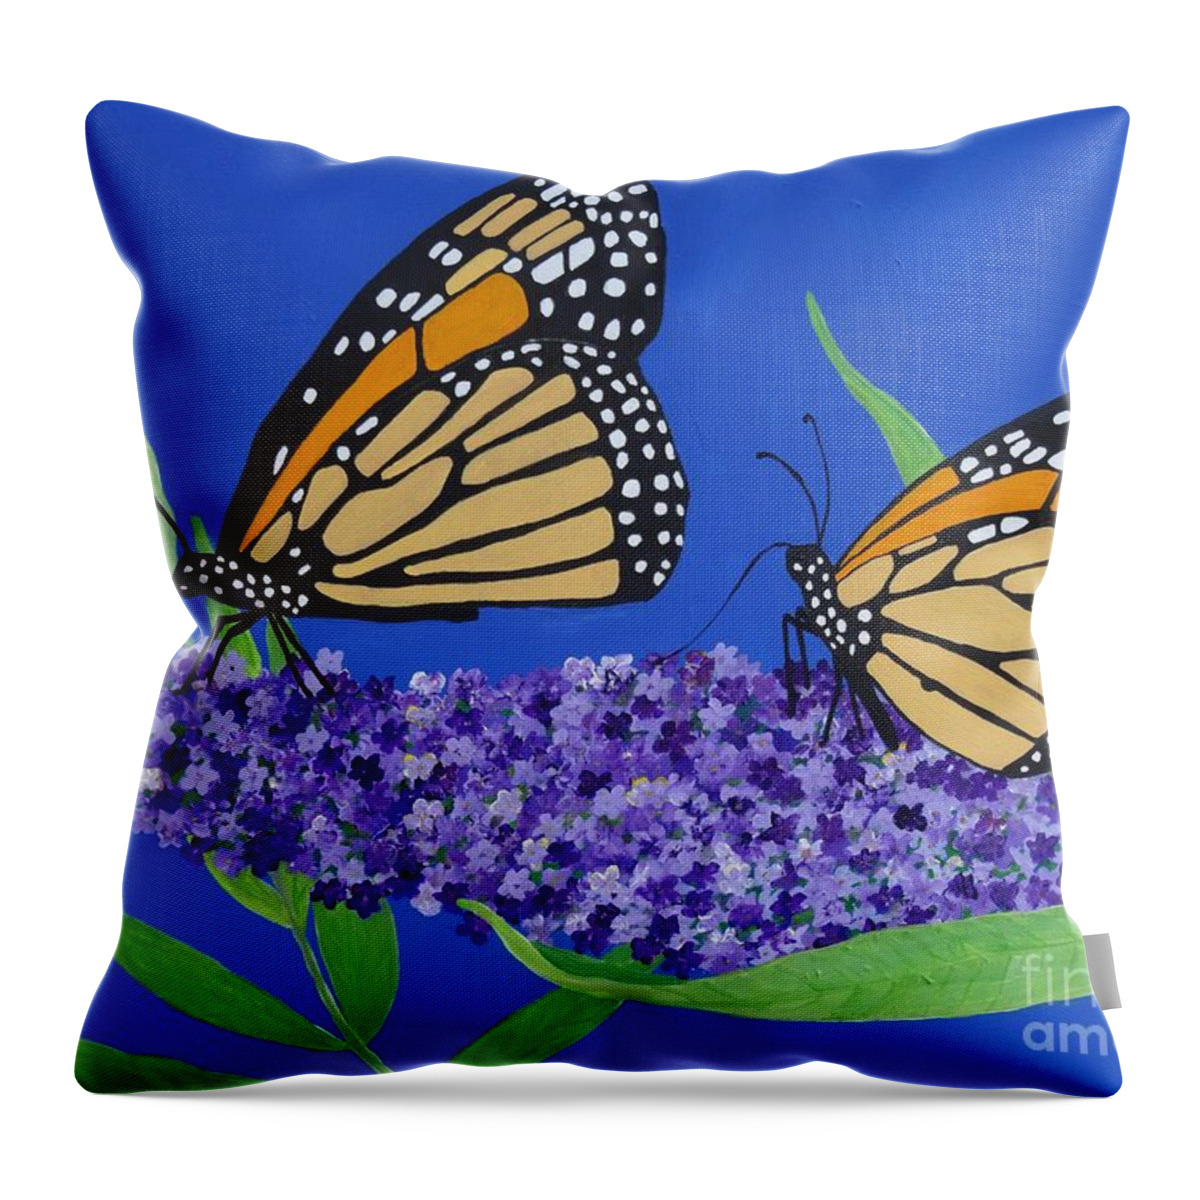 Monarch Butterflies Throw Pillow featuring the painting Monarch Butterflies on Buddleia Flower by Karen Jane Jones